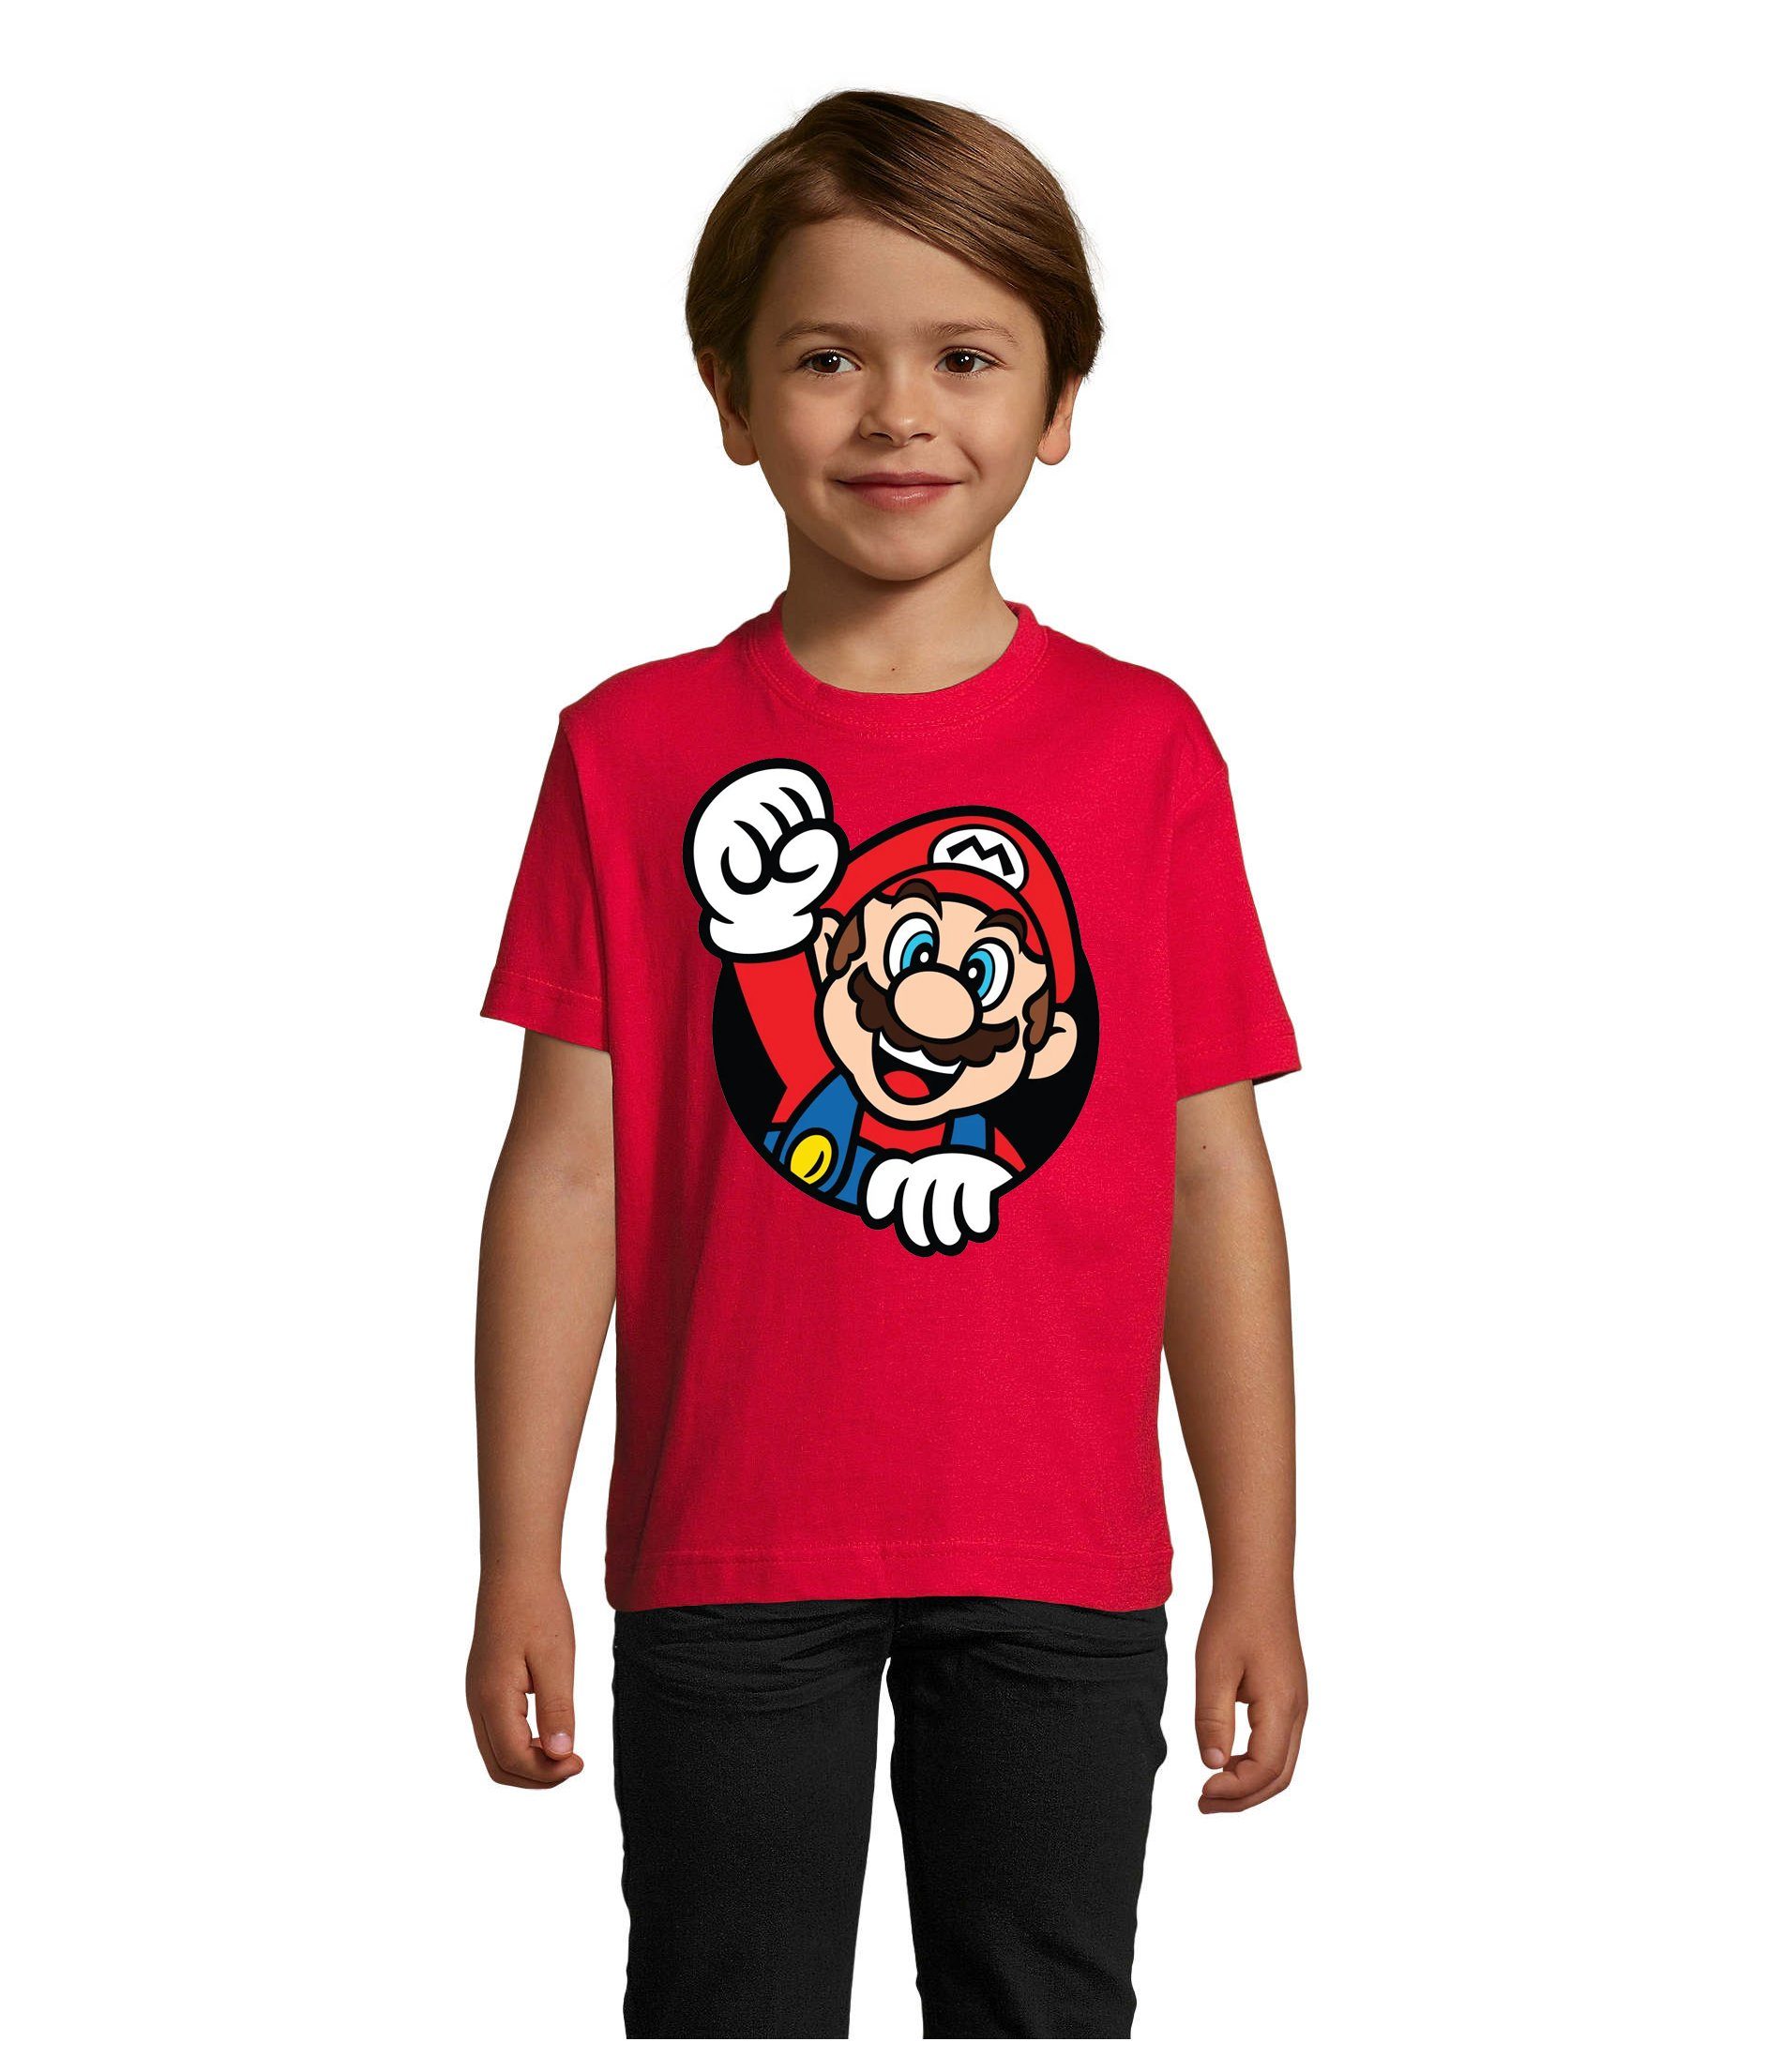 Blondie & Brownie T-Shirt Kinder Super Mario Faust Nerd Konsole Gaming Spiel Retro Konsole